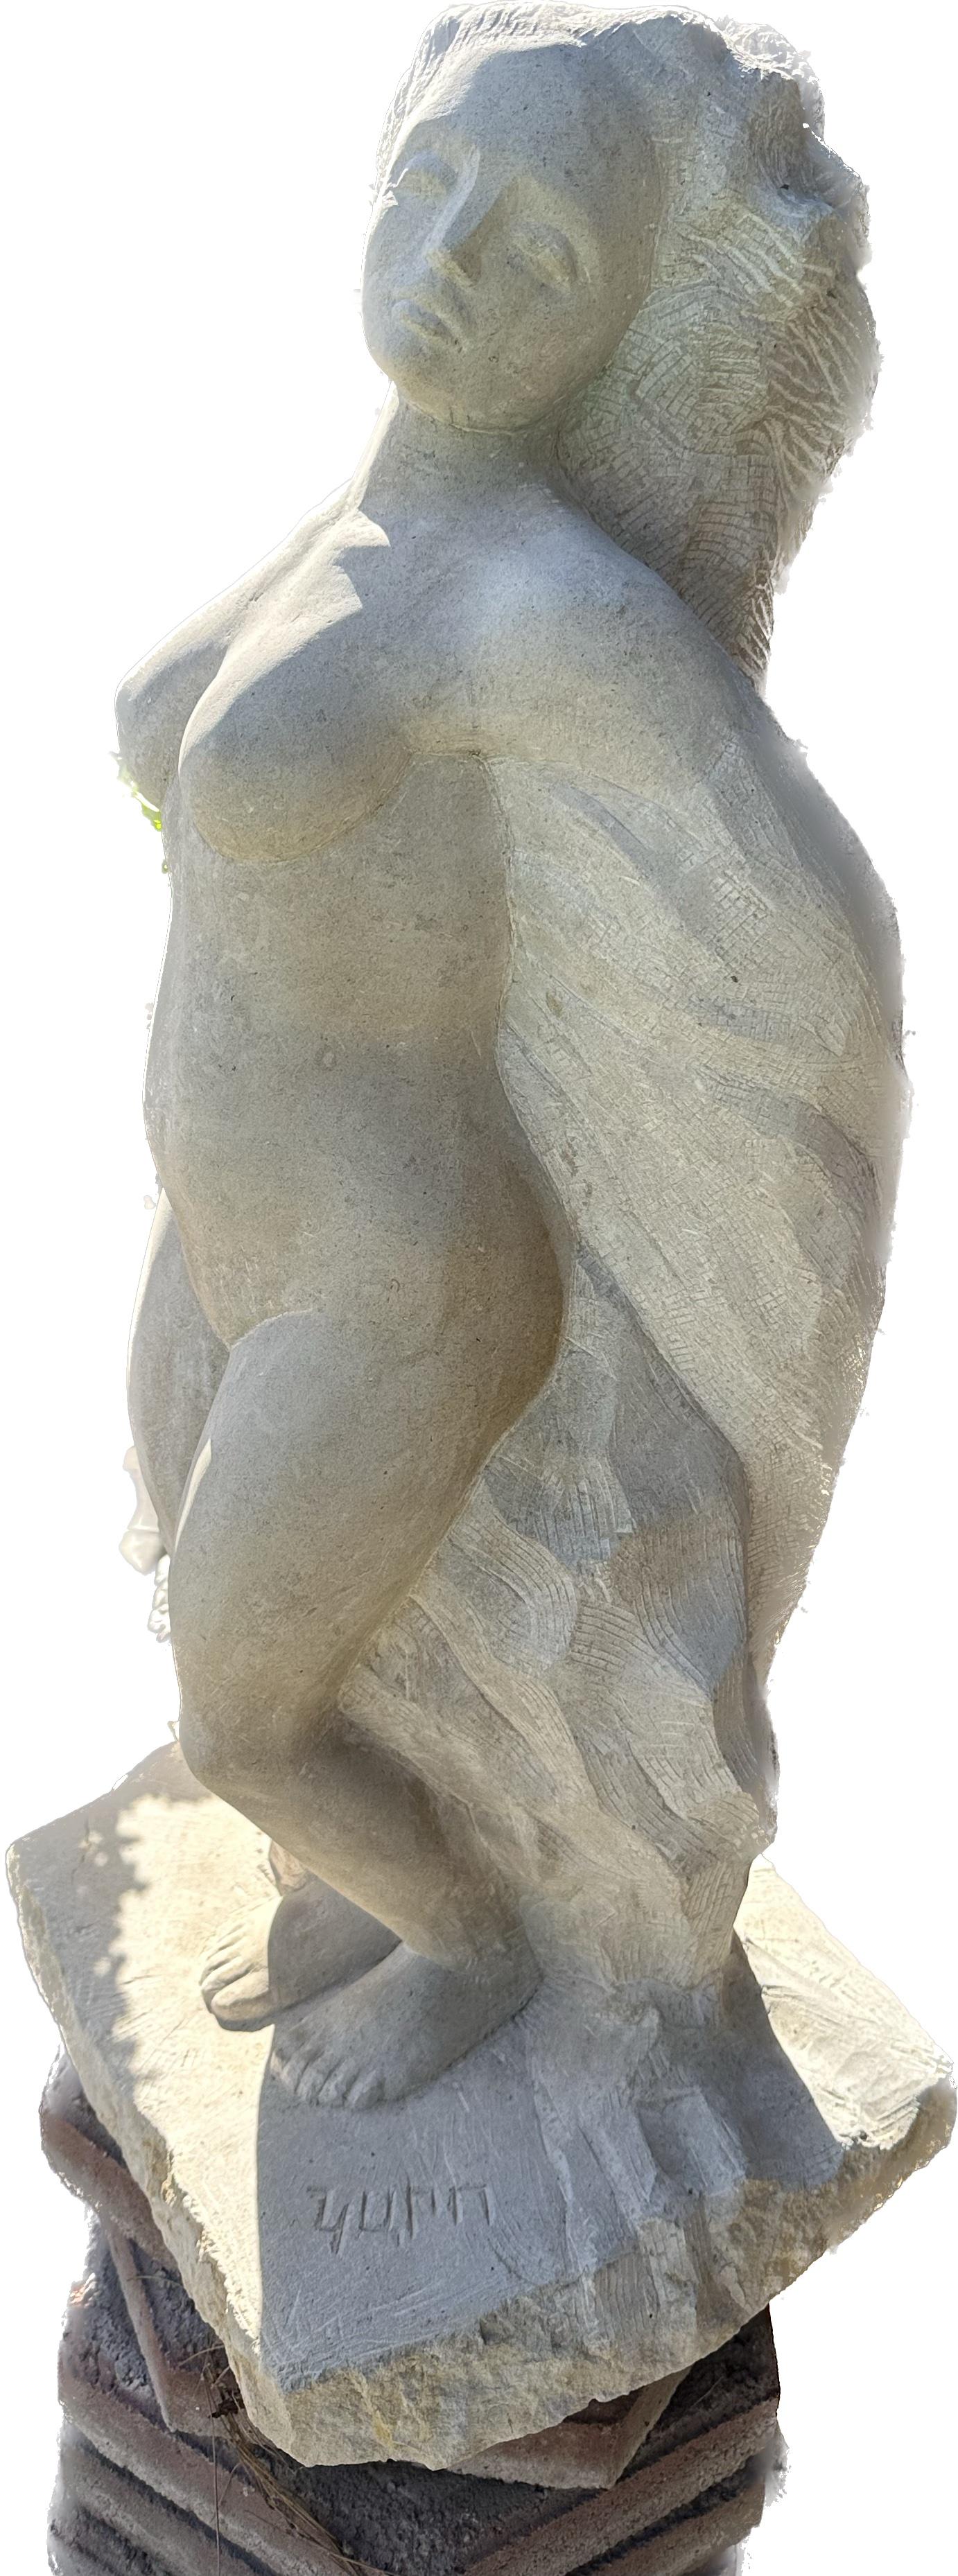 Aktfrau, Skulptur, Stein, handgefertigt von Garo (Impressionismus), Sculpture, von Karapet Balakeseryan  (Garo)